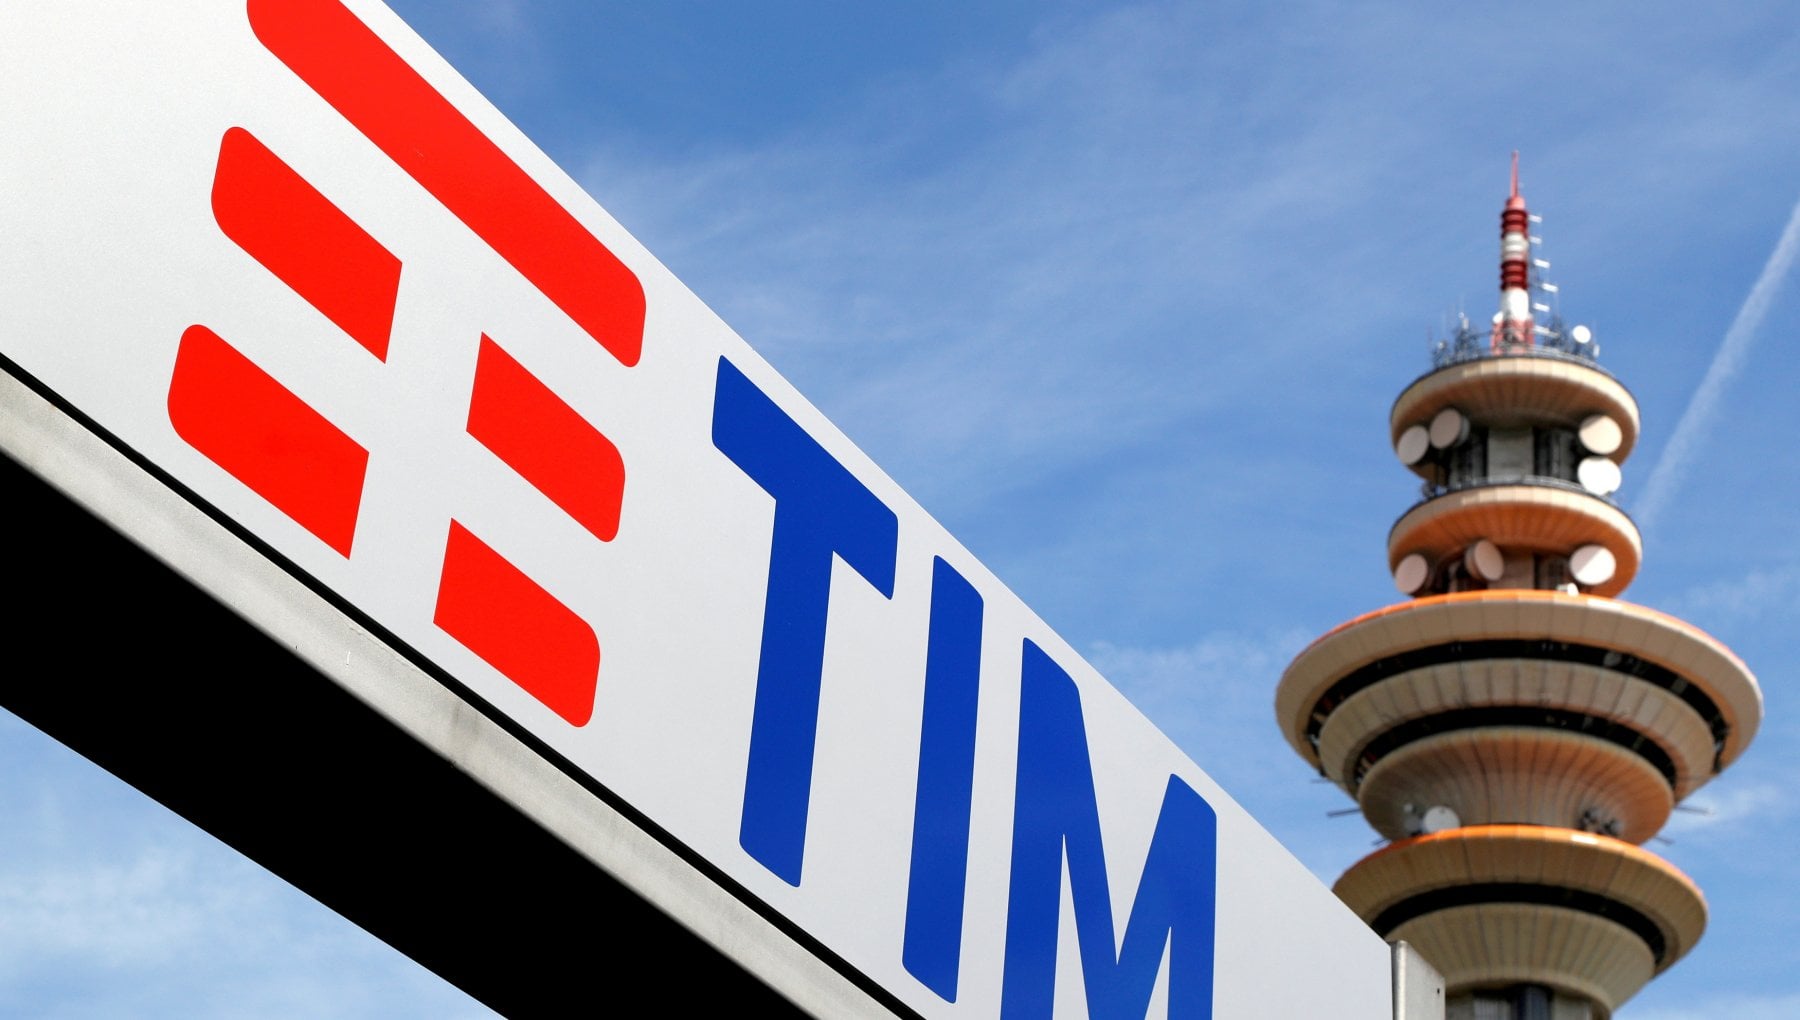 financialounge -  borse inflazione mercati Telecom Italia